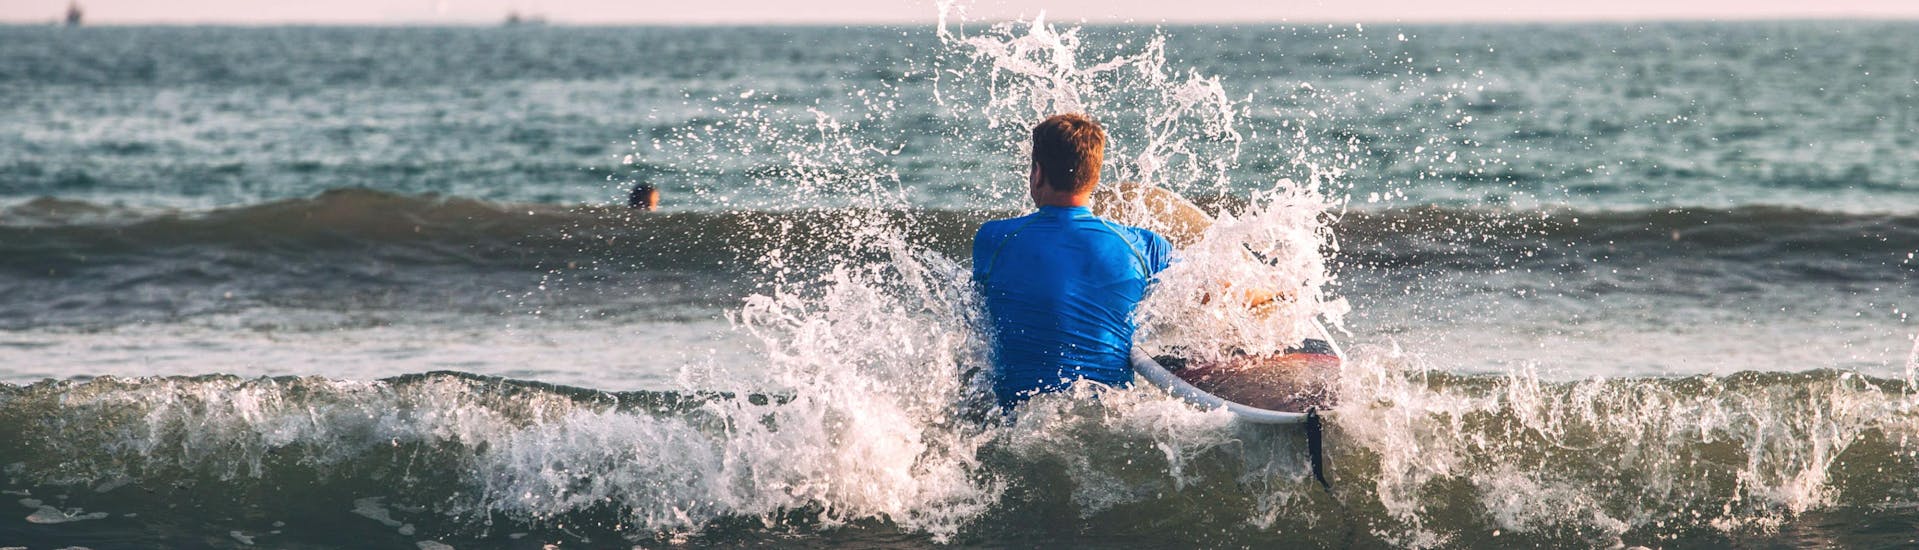 Un jeune homme patauge dans l'eau sur sa planche pendant une sortie surf à Hossegor.